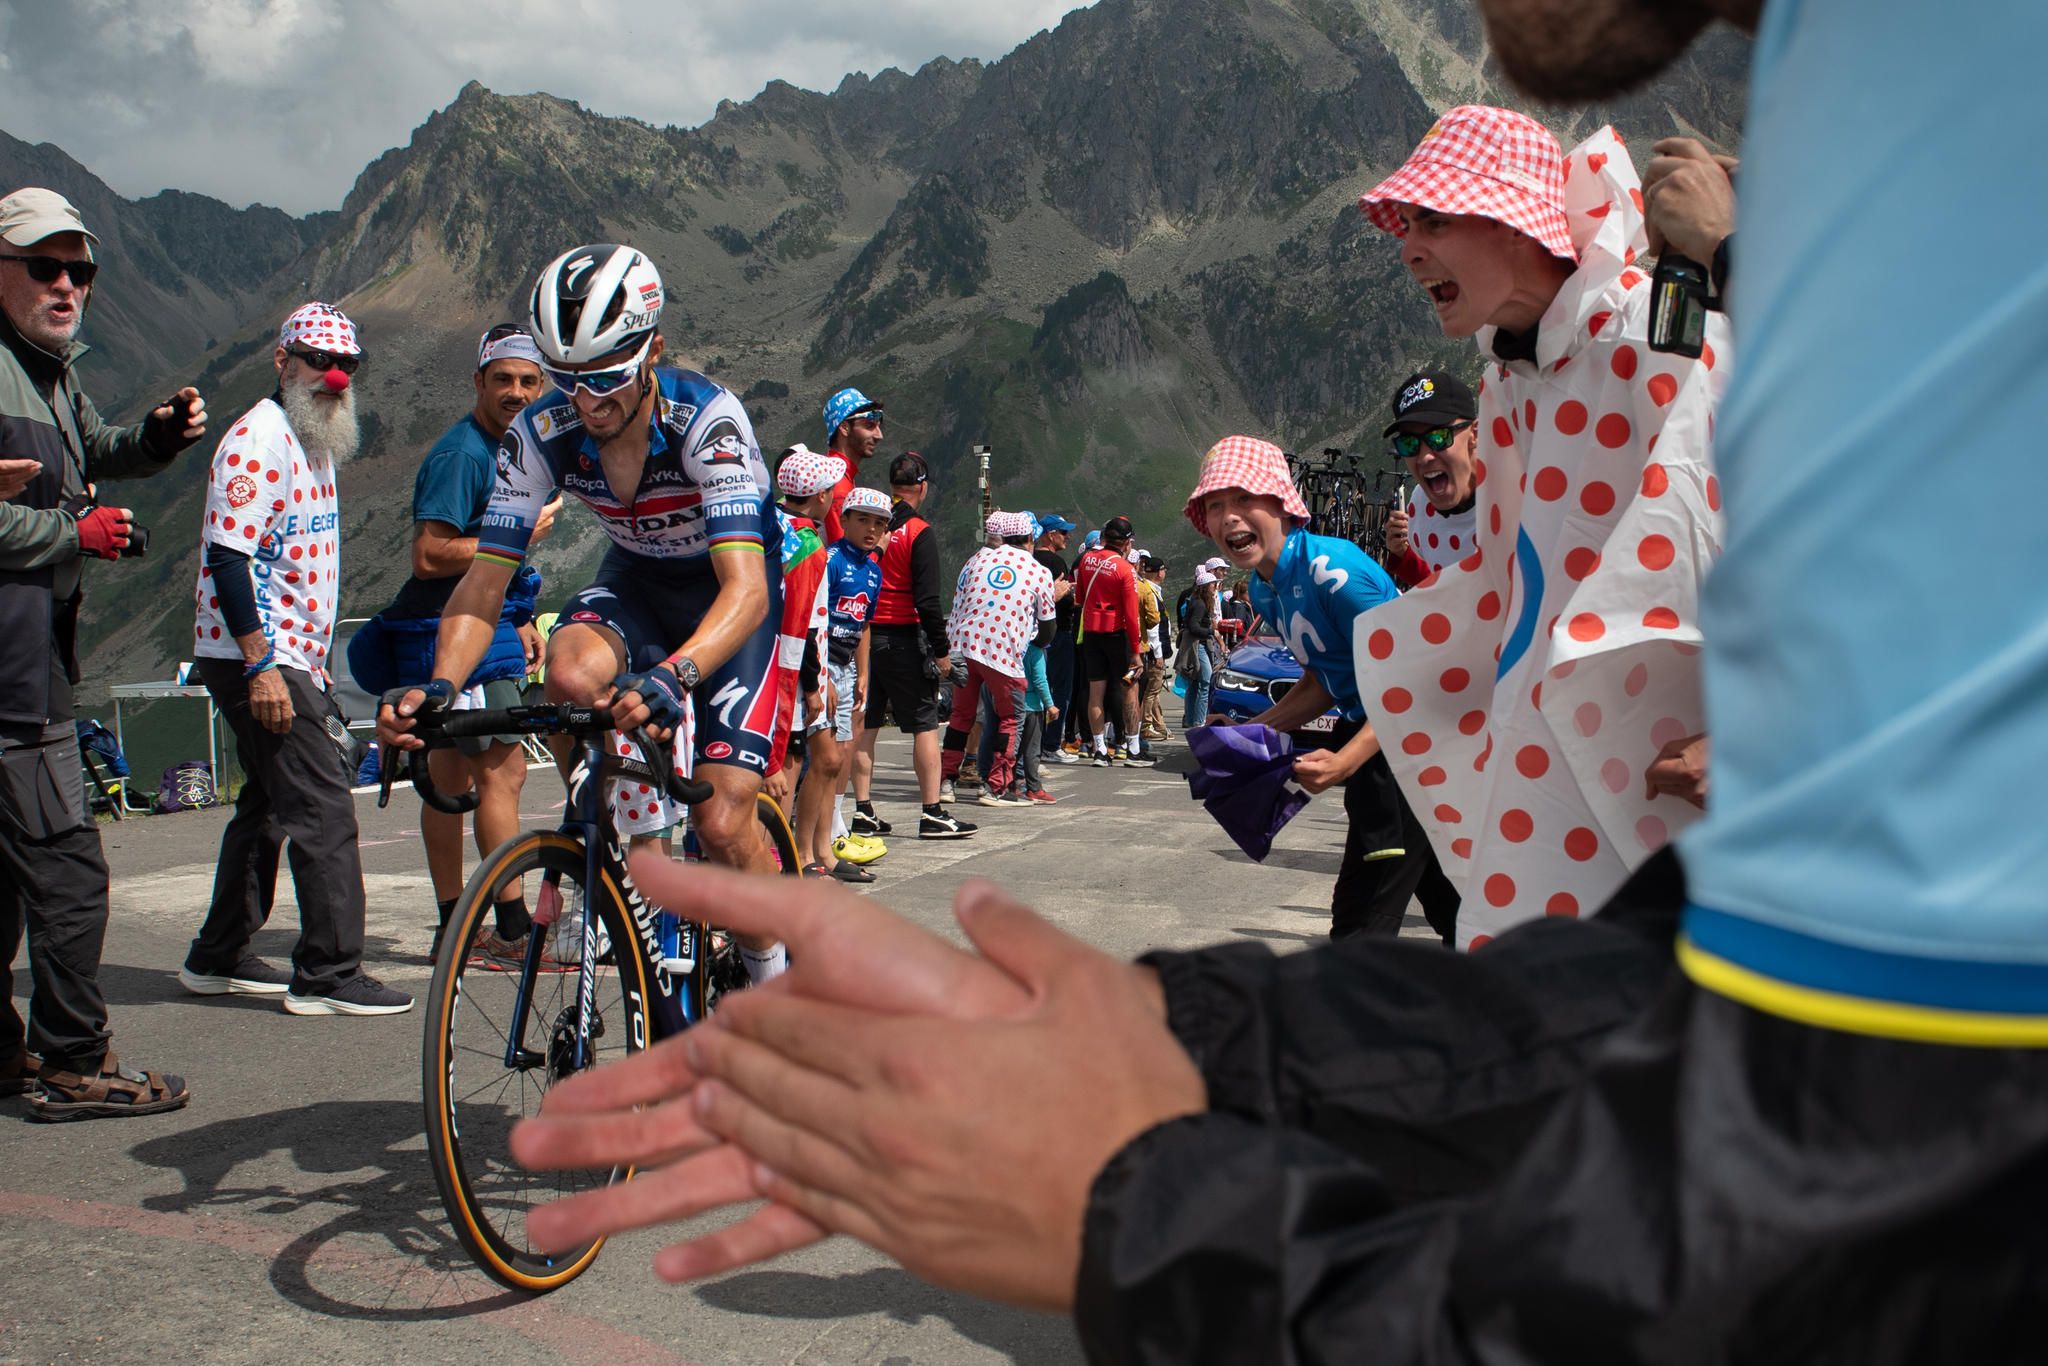 Tour de France Fotograf hält exzentrische Fans fest STERN.de